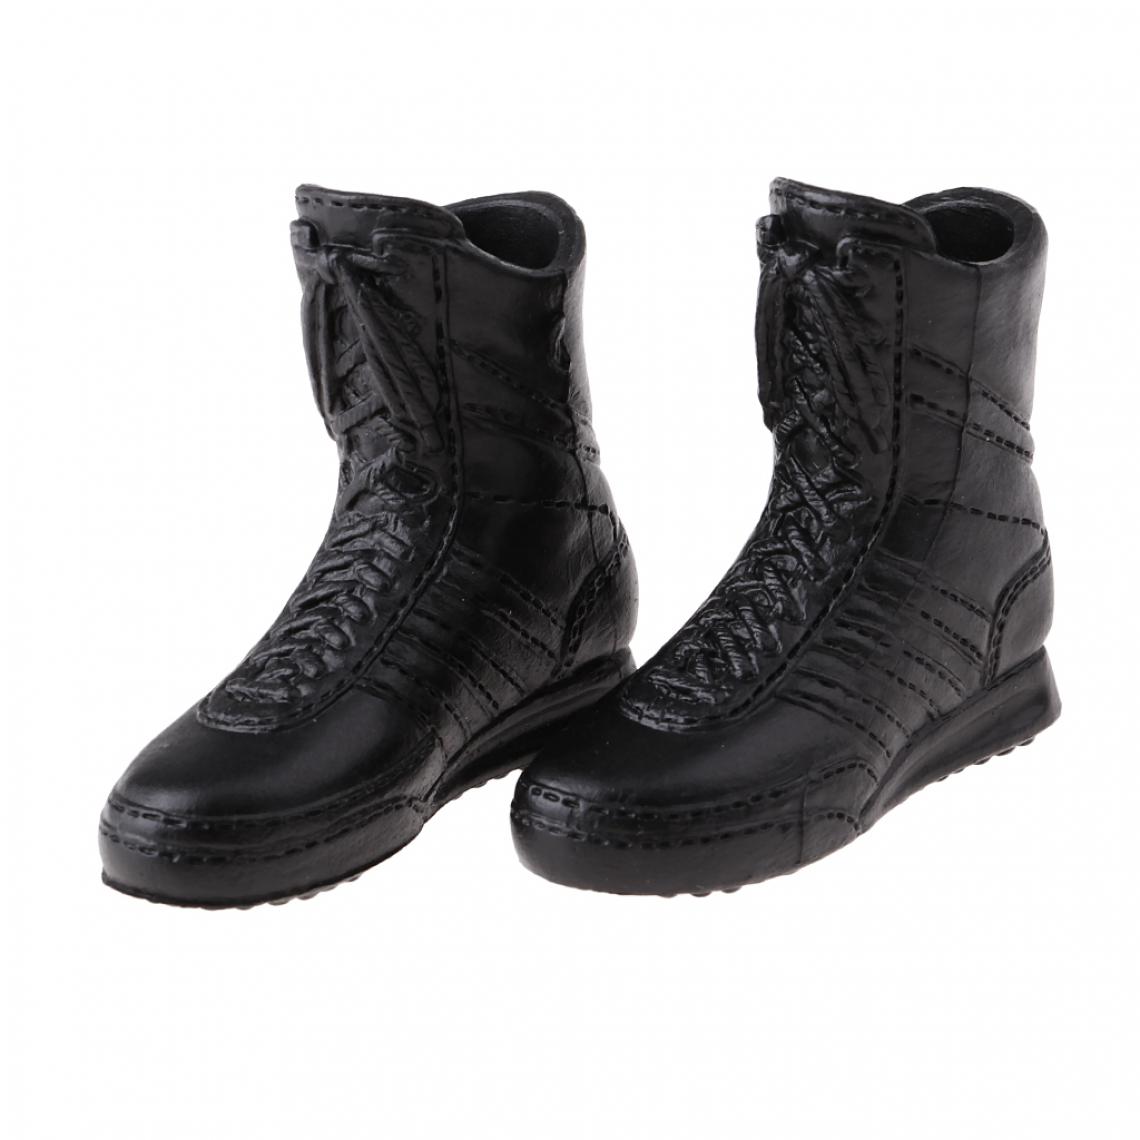 marque generique - 1/6 Femmes Chaussures Bottes Noires Accessoires pour 12'' Corps de Figure d'Action - Guerriers